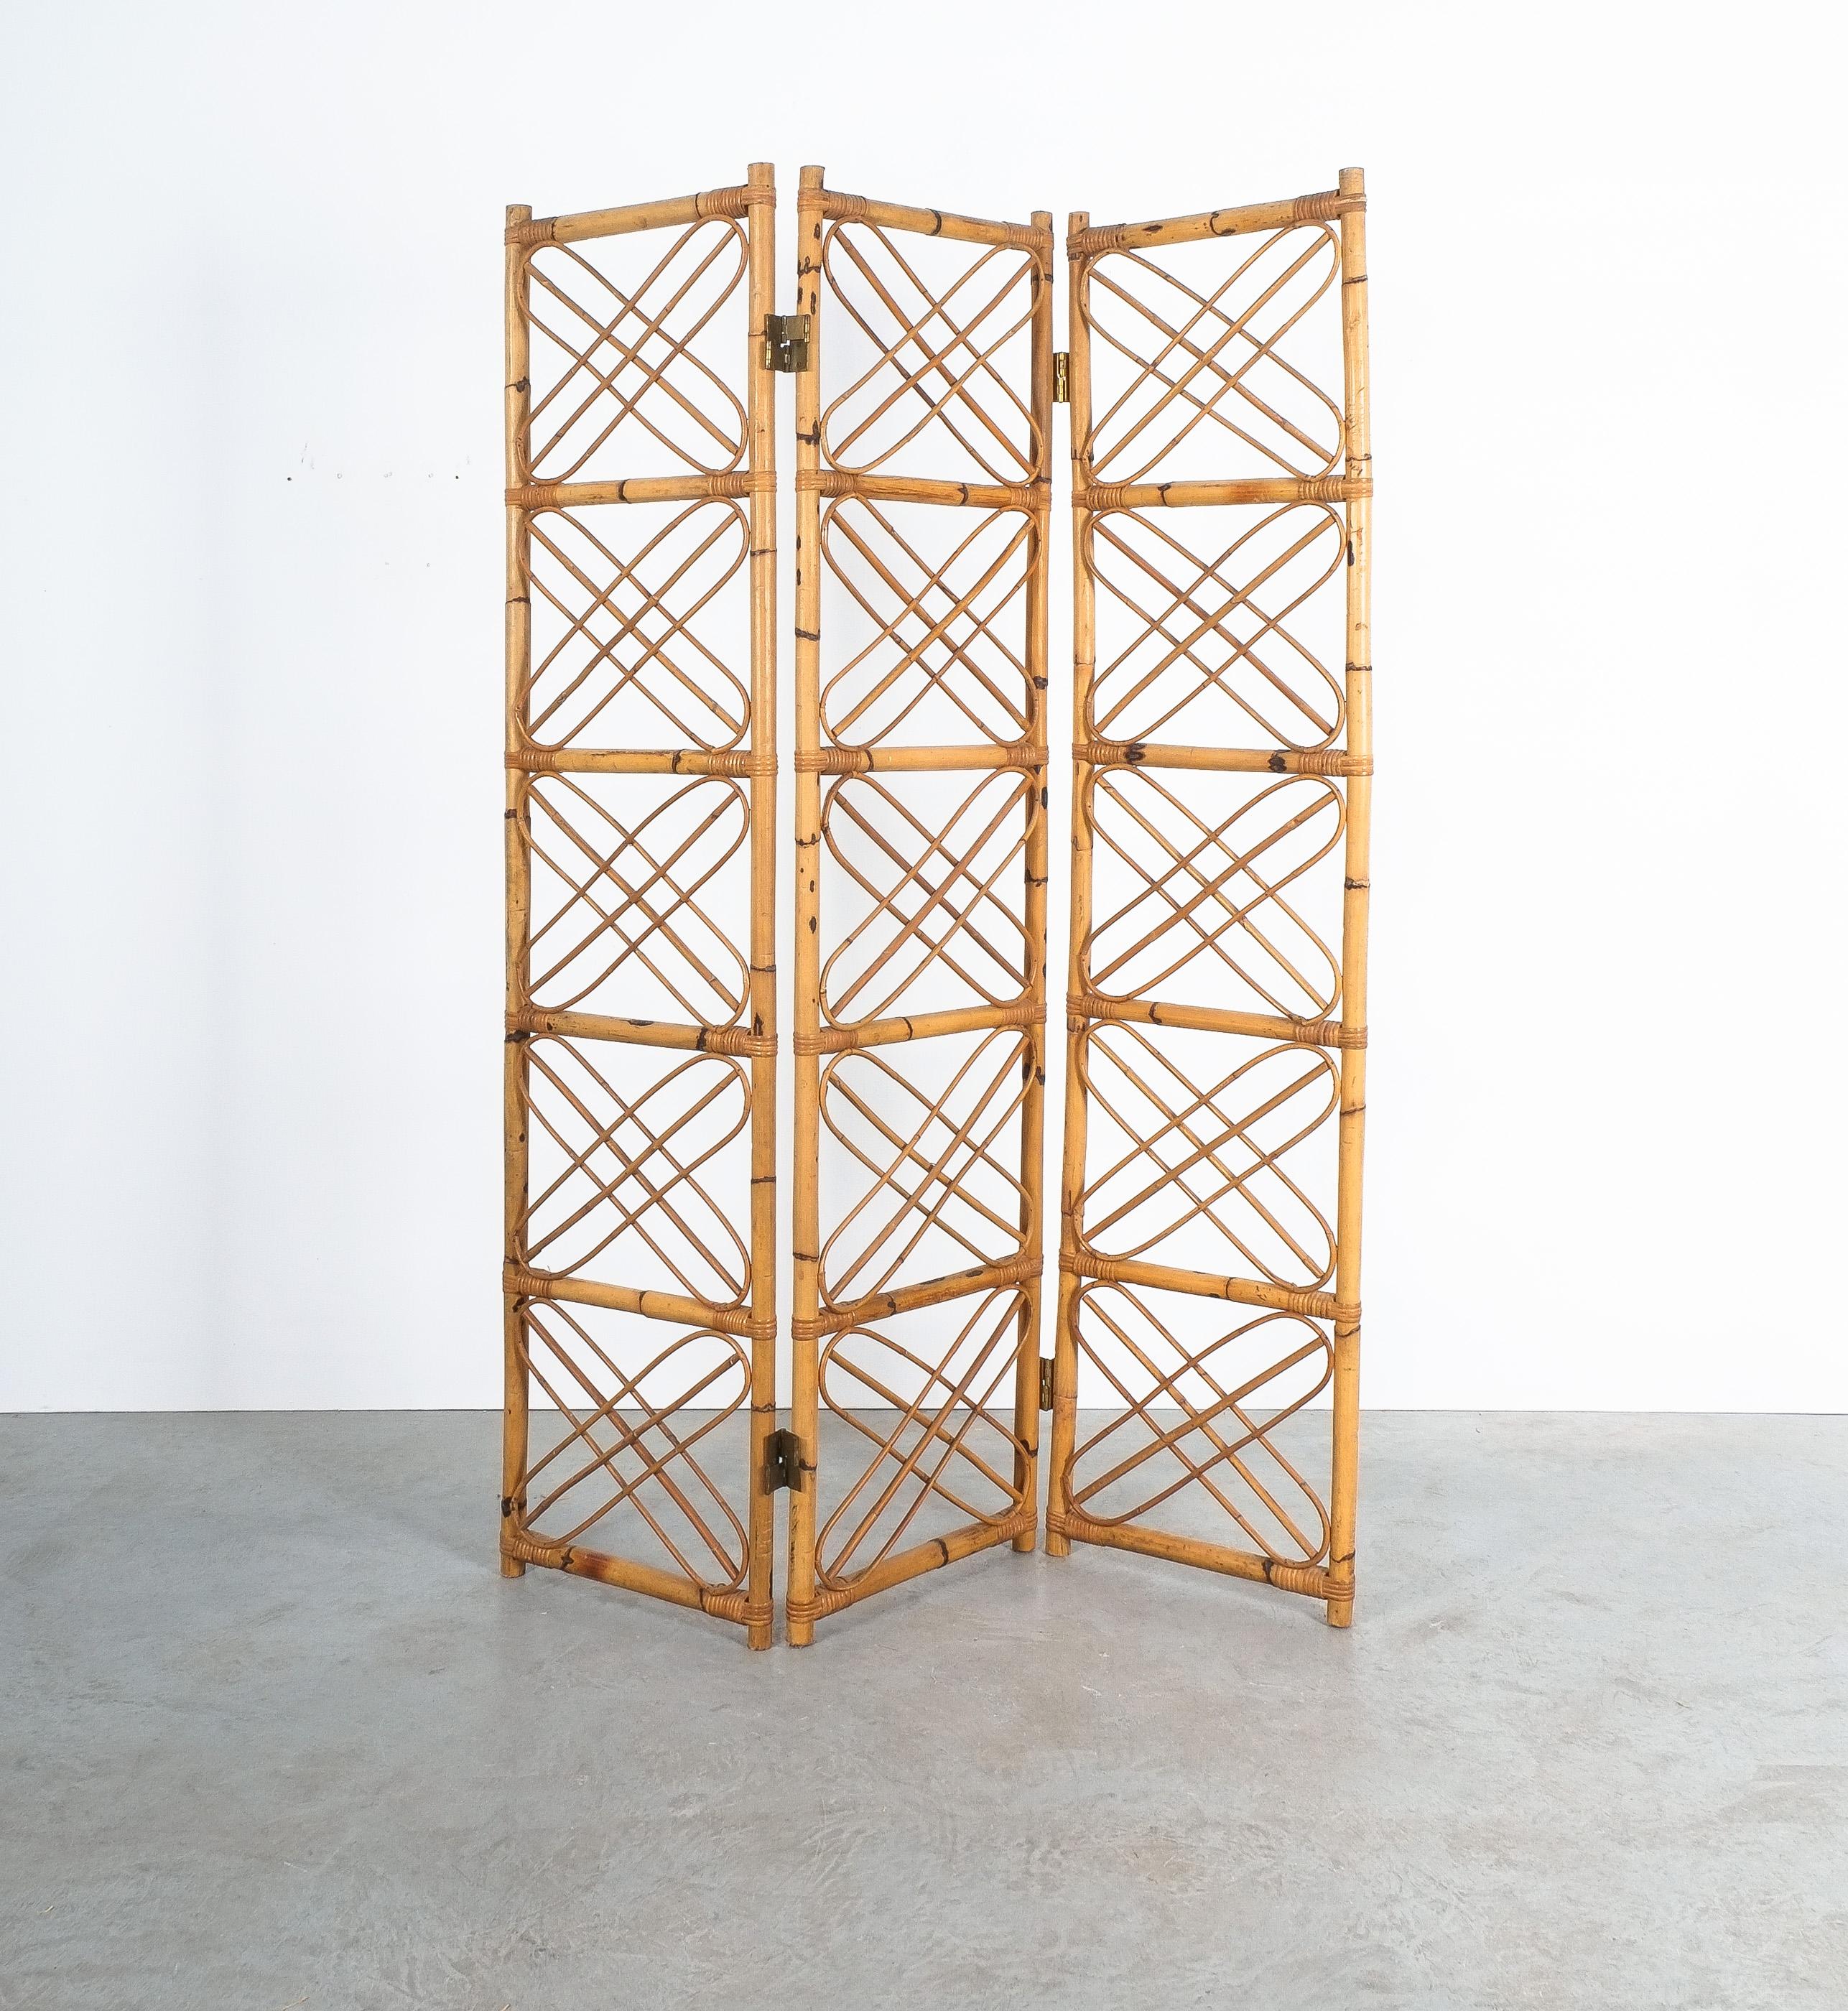 Rattan-Bambus-Raumteiler Paravant Italien, um 1965

Ornamentaler, handgefertigter Paravent aus 3 Paneelen, die aus gebogenen Bambus- und Rattanstücken bestehen und mit Messingscharnieren zusammengehalten werden. In dem großen Bild bilden sie ein